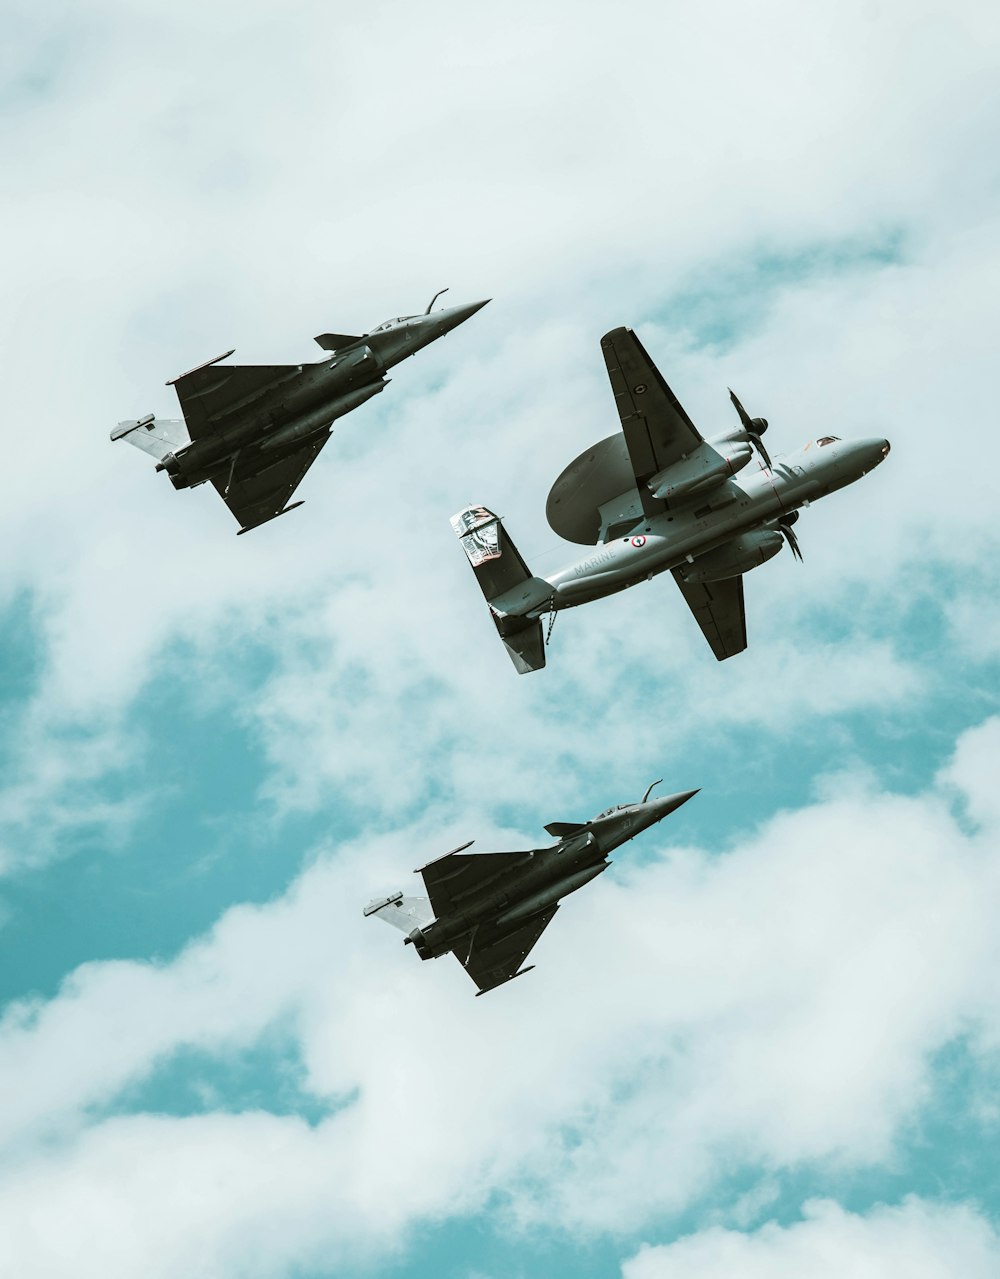 Un gruppo di aerei da combattimento che volano attraverso un cielo nuvoloso